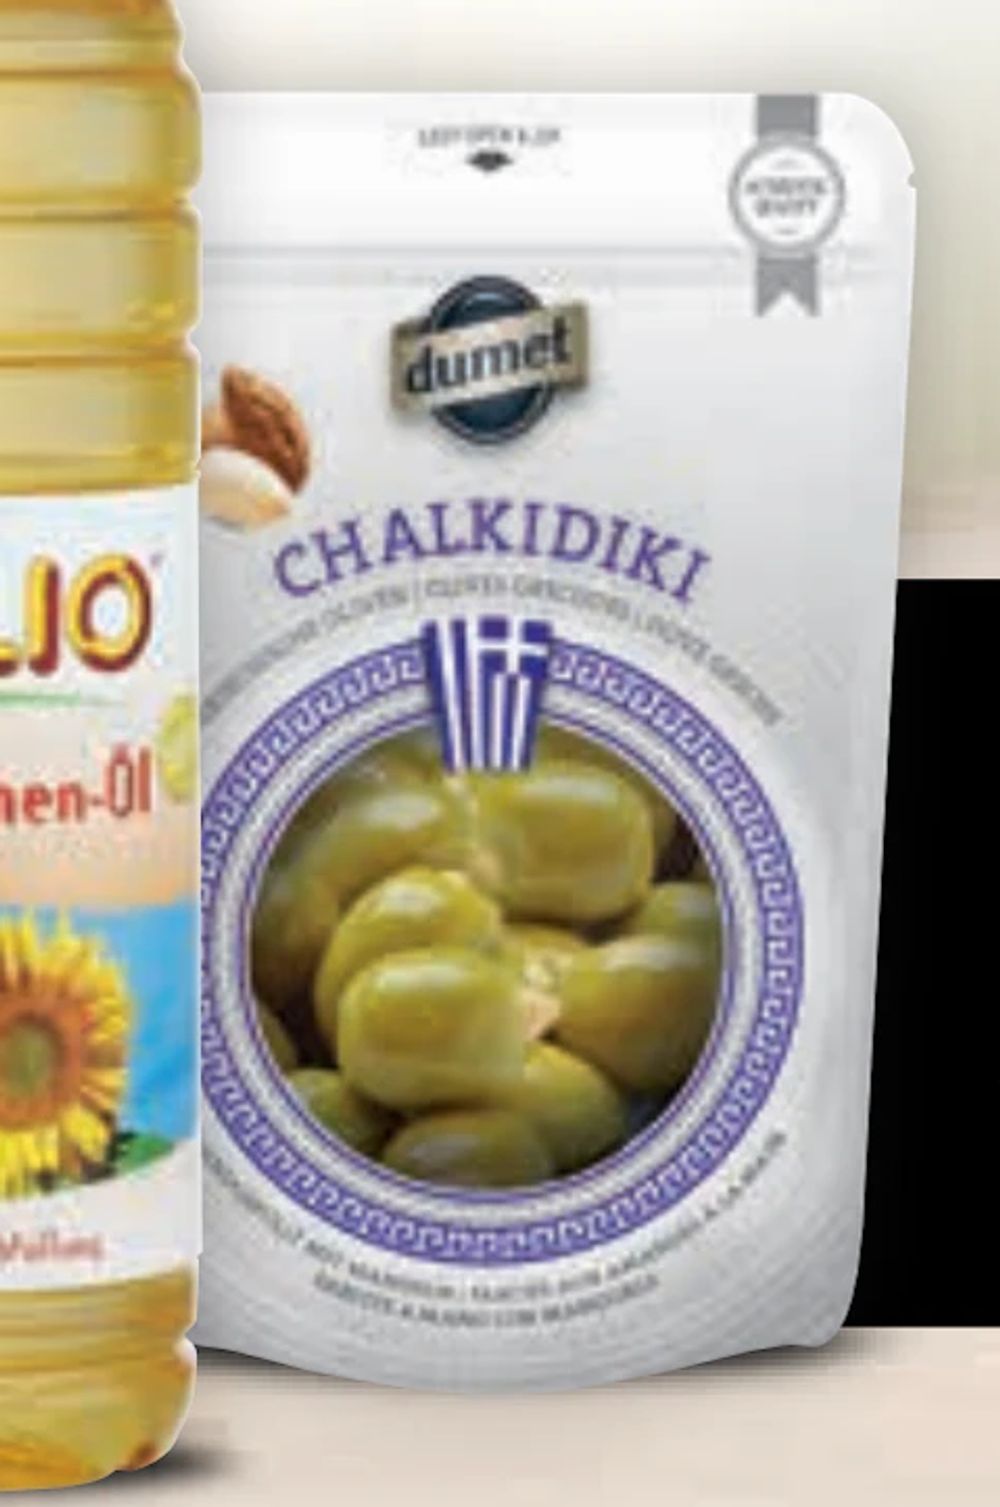 Tilbud på Dumet Chalkidiki grønne oliven fra CITTI til 28,99 kr.